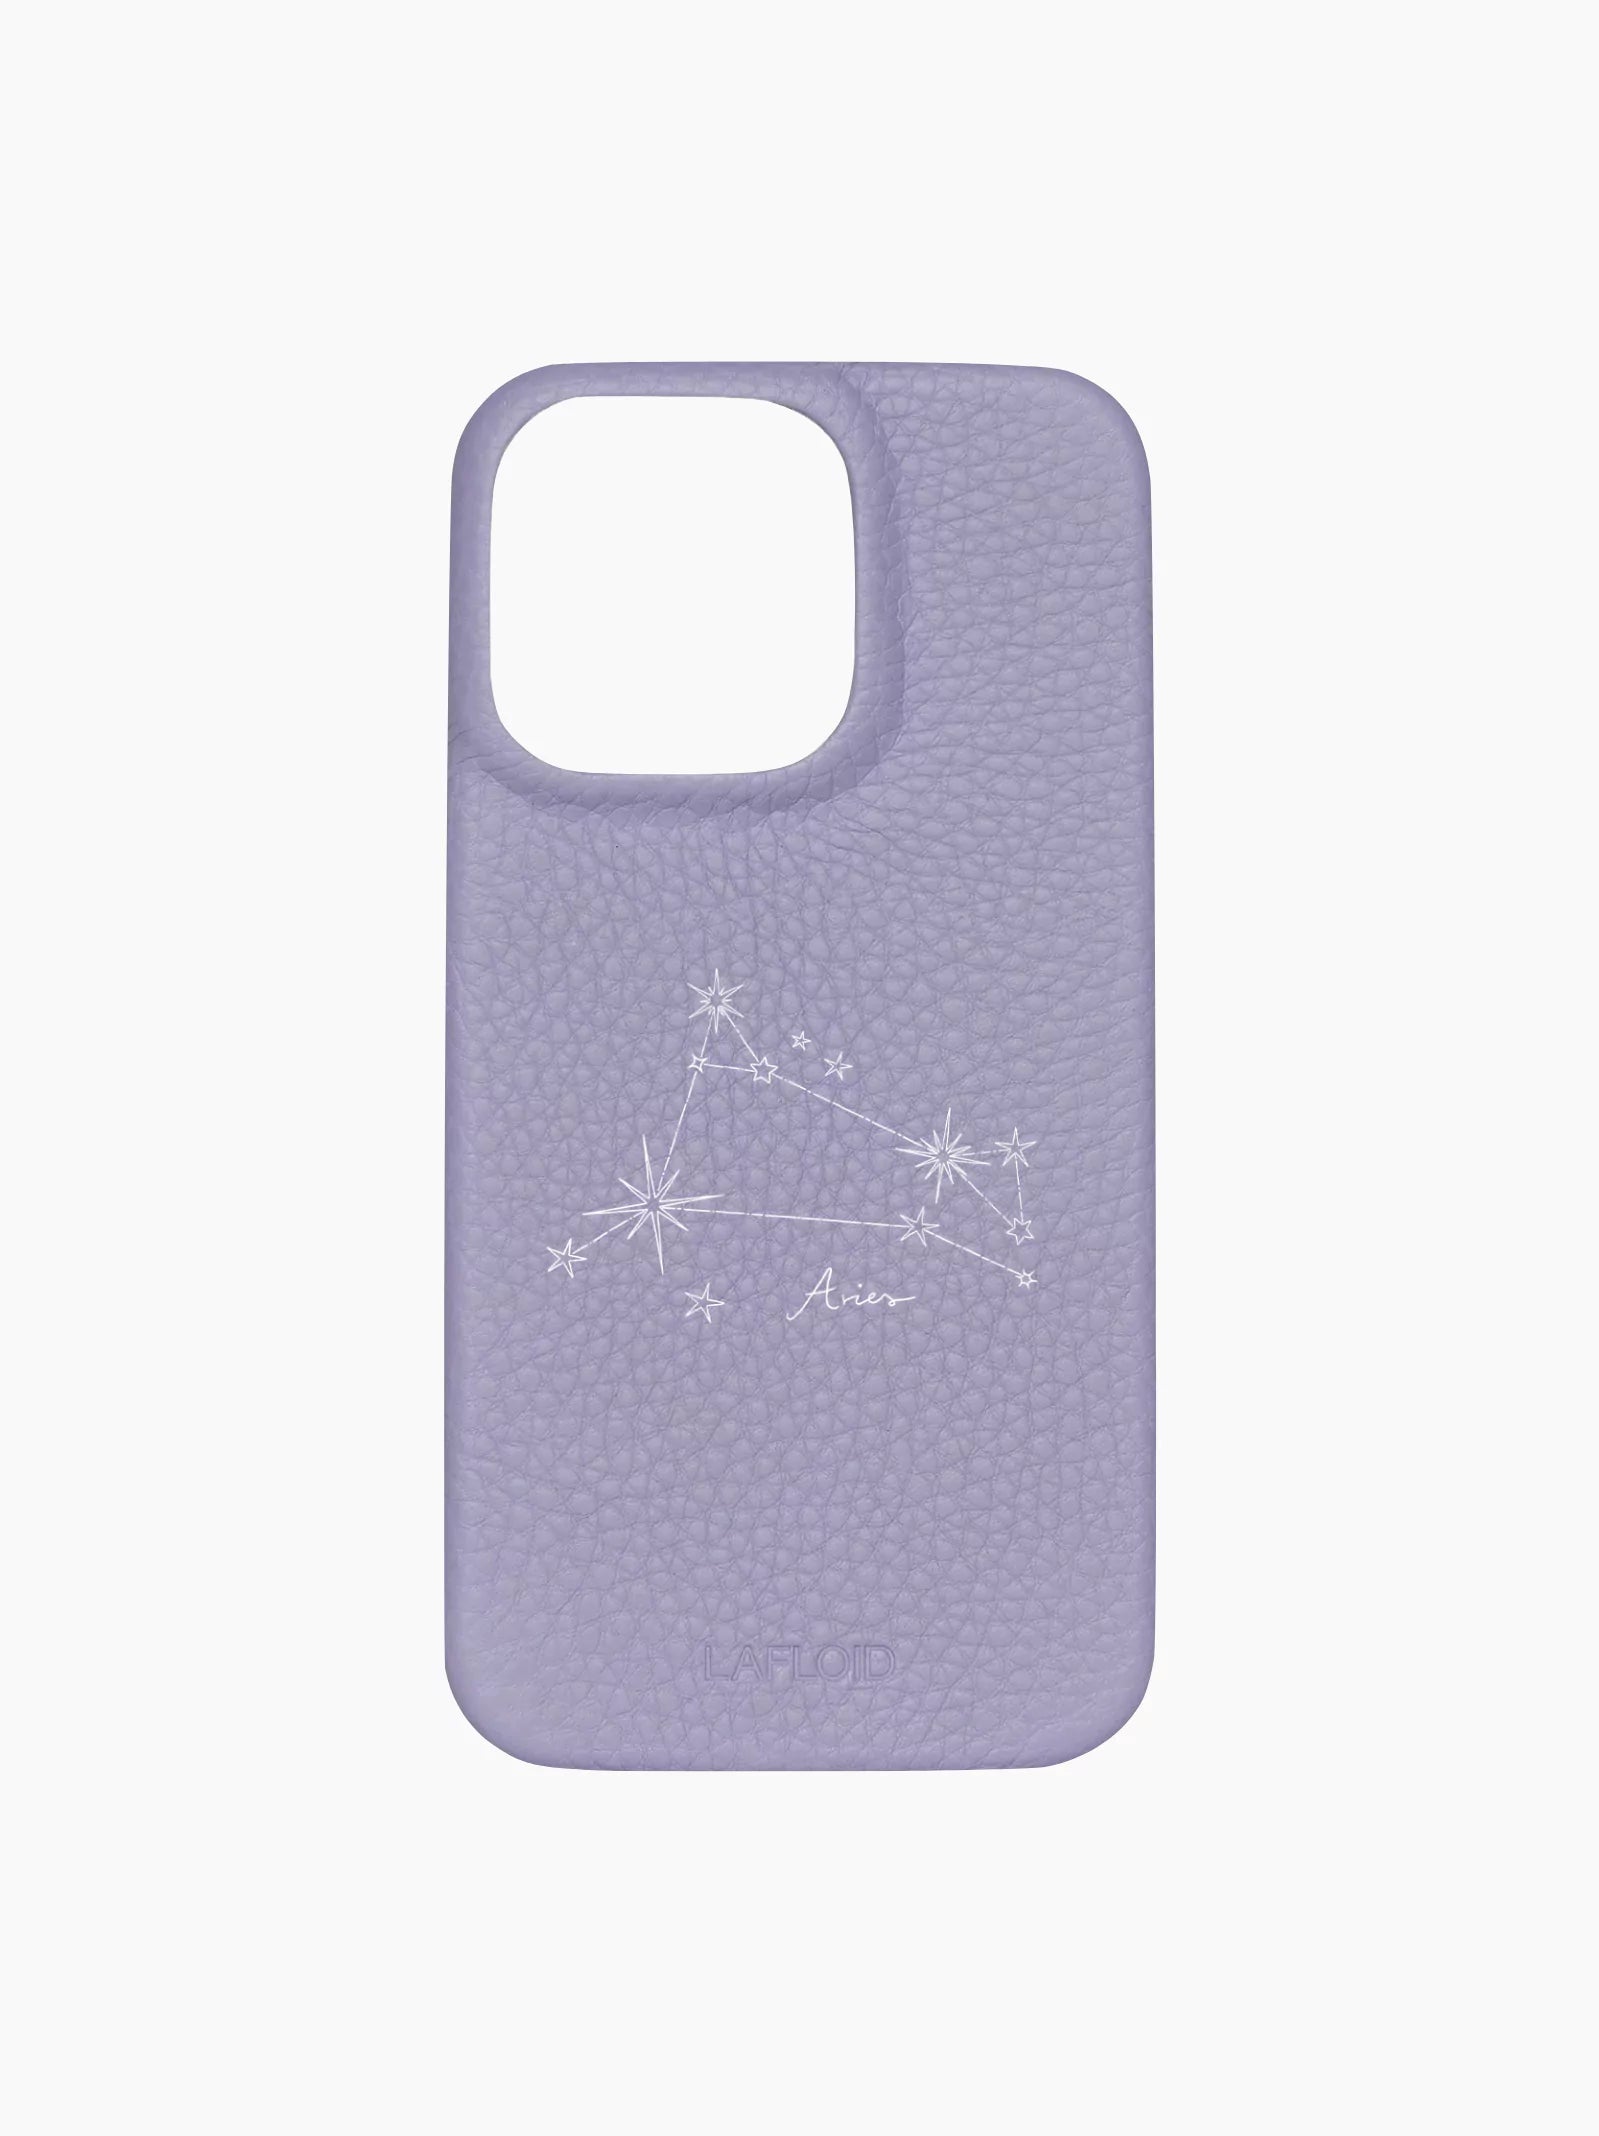 Purple iPhone Case